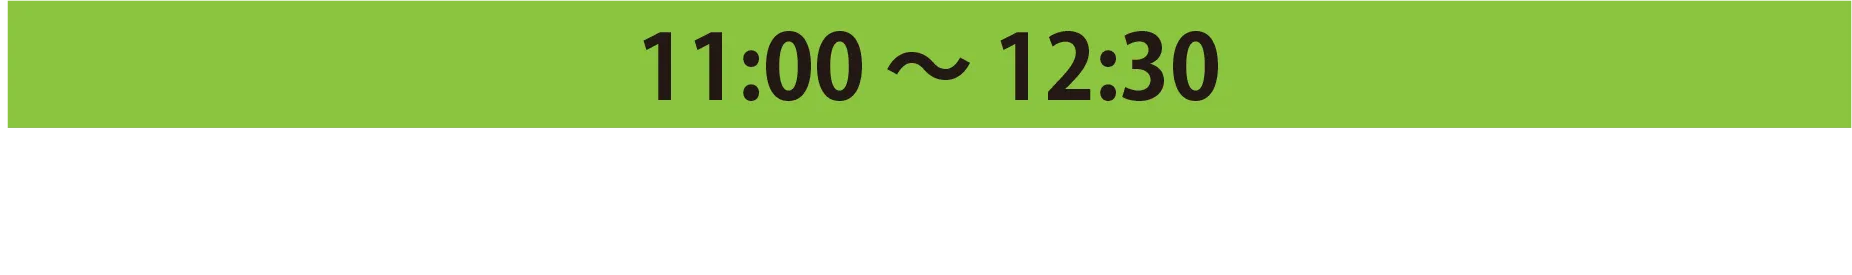 11:00 ～ 12:30 MEGU SHINONOME